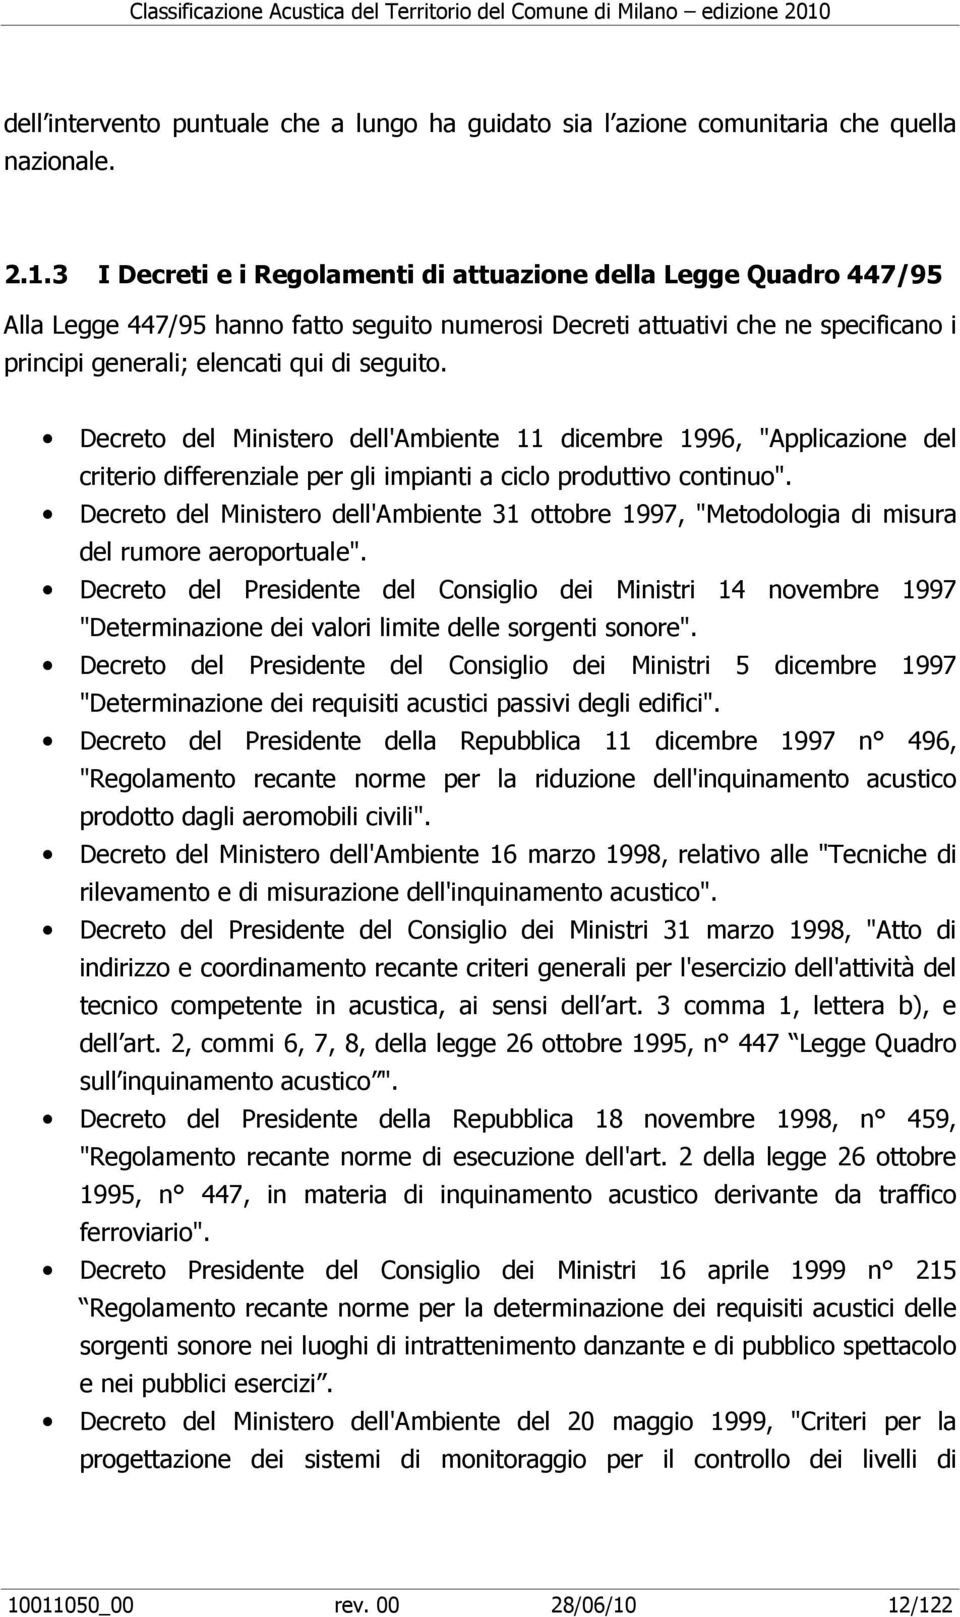 Decreto del Ministero dell'ambiente 11 dicembre 1996, "Applicazione del criterio differenziale per gli impianti a ciclo produttivo continuo".